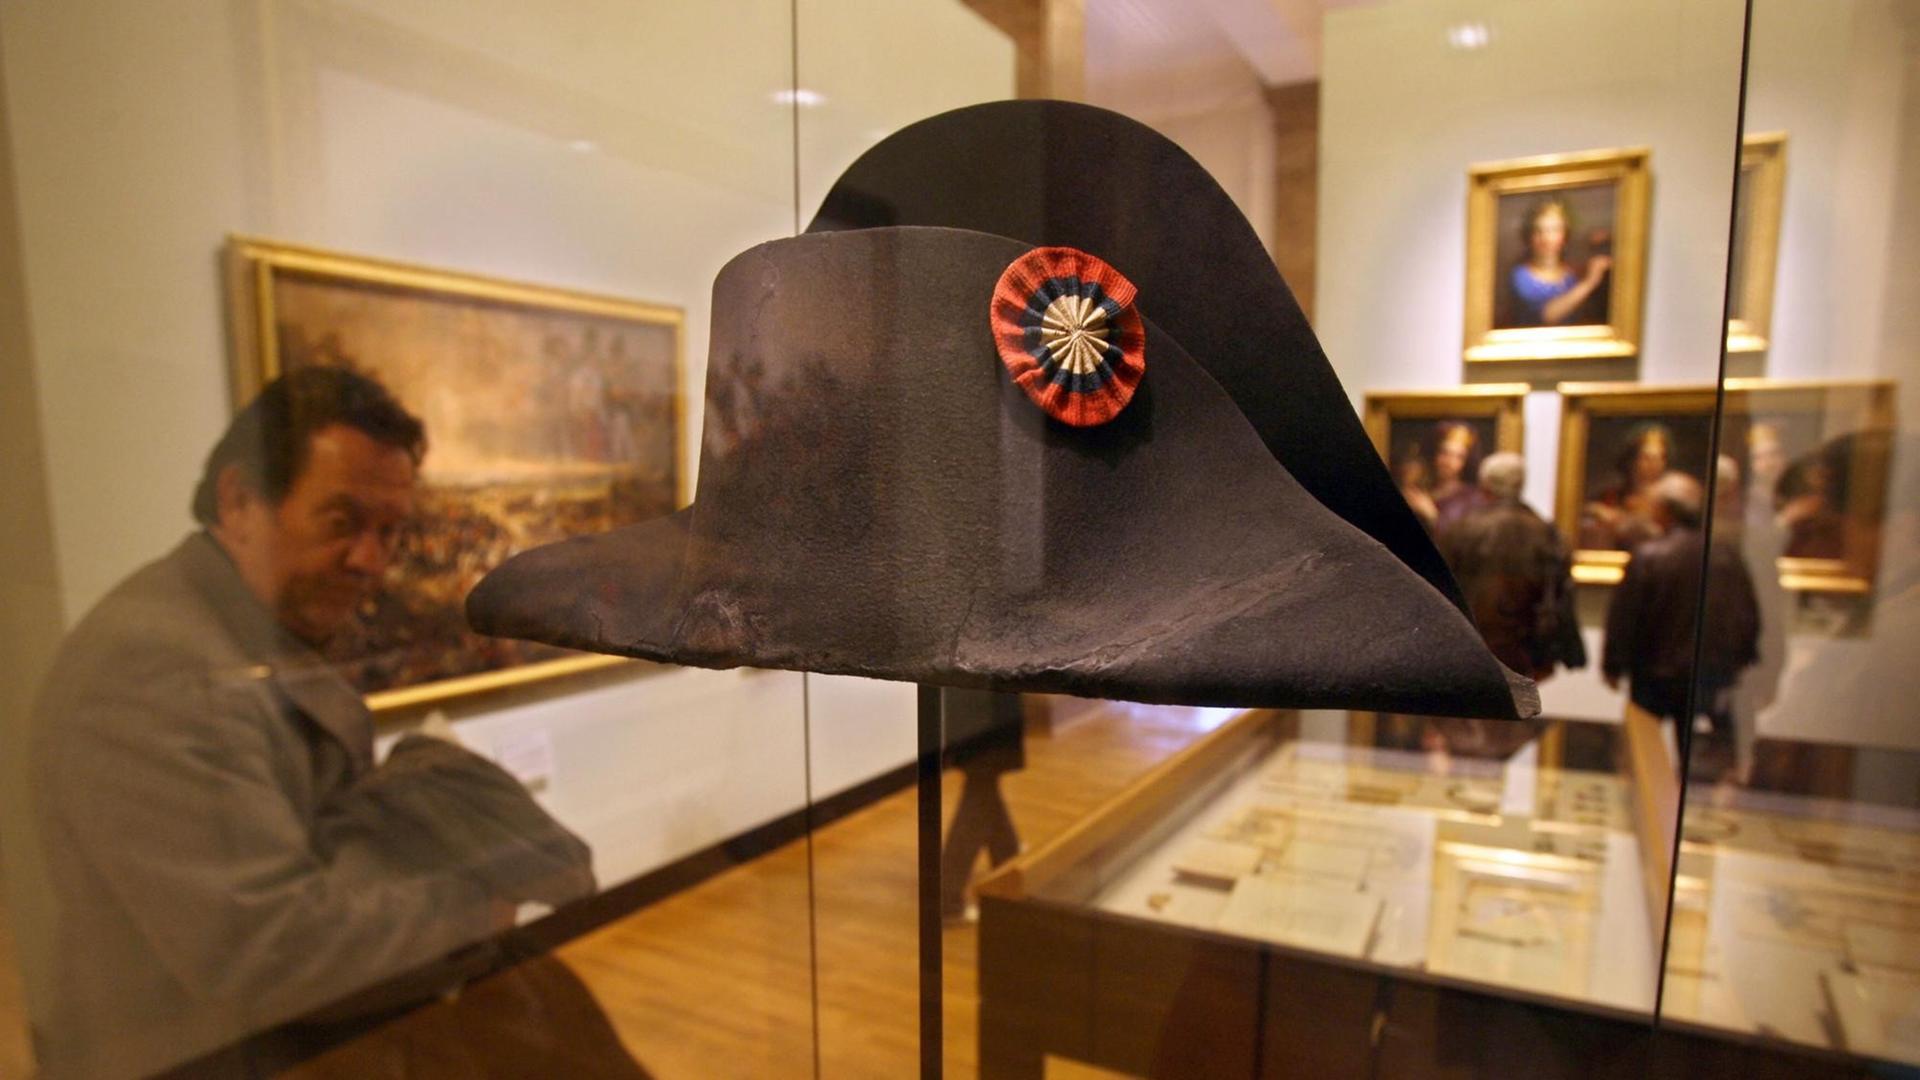 Ein Besucher schaut sich den Hut von Kaiser Napoleon an. Dieser hatte ihn in der berühmten Schlacht von Waterloo verloren. Der Hut ist Teil einer Dauerausstellung im Deutschen Historischen Museum in Berlin. Foto: AFP PHOTO JOHN MACDOUGALL